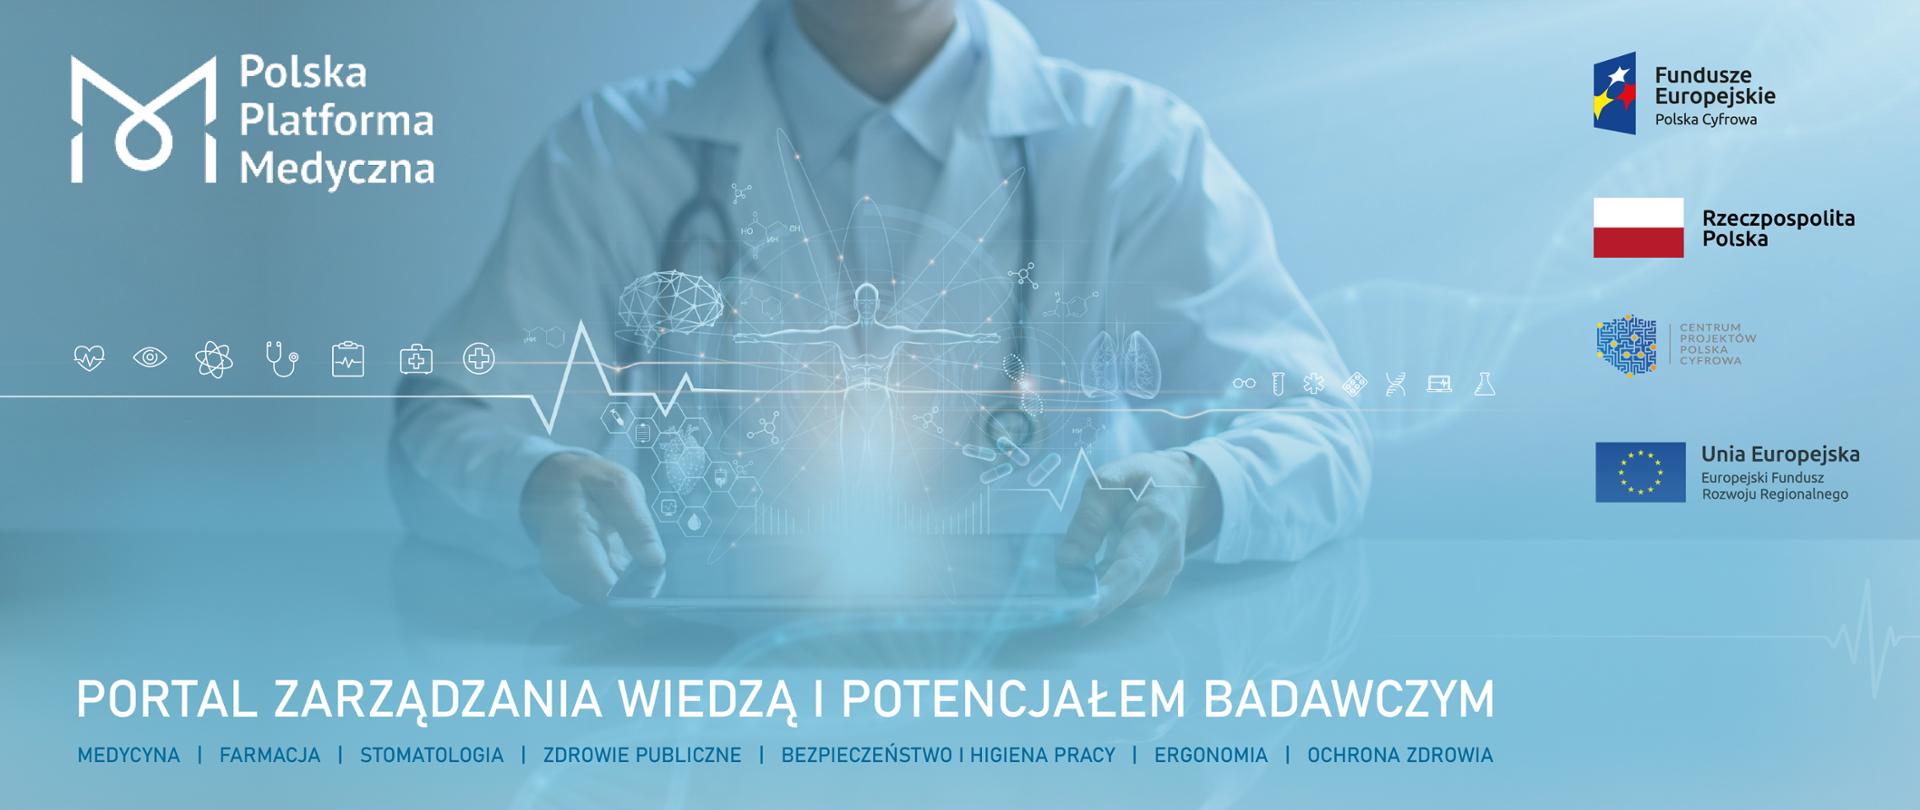 Polska Platforma Medyczna